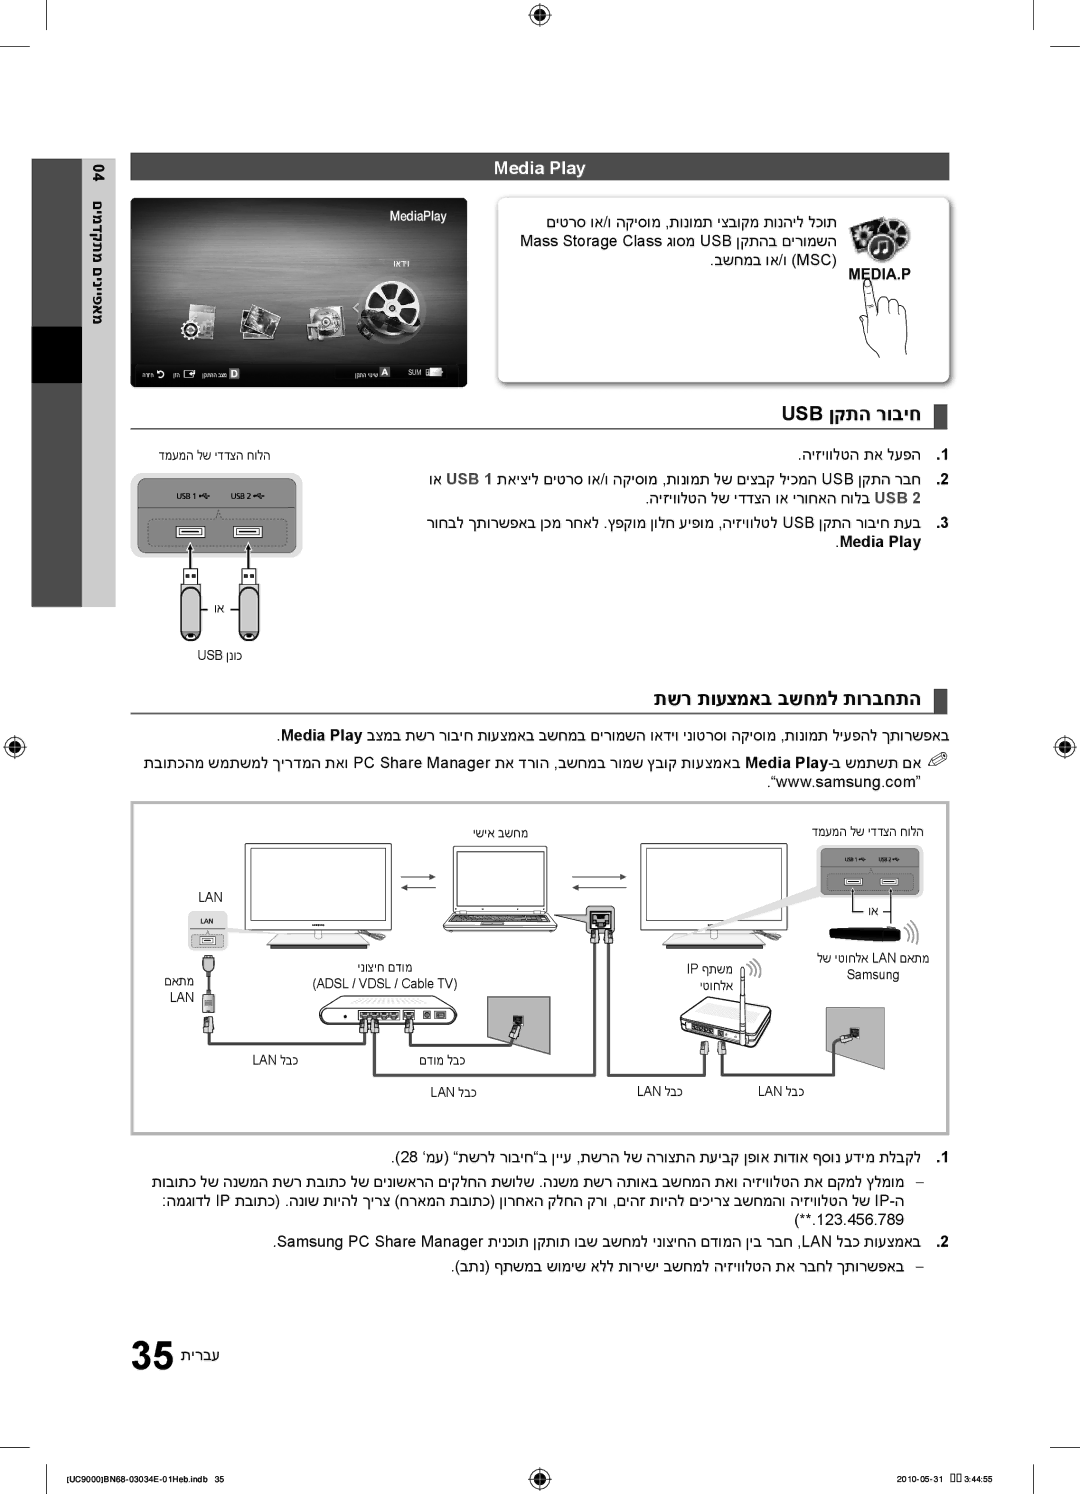 Samsung UA55C9000SRXSQ manual Usb ןקתה רוביח, תשר תועצמאב בשחמל תורבחתה, Media Play, בשחמב וא/ו Msc 